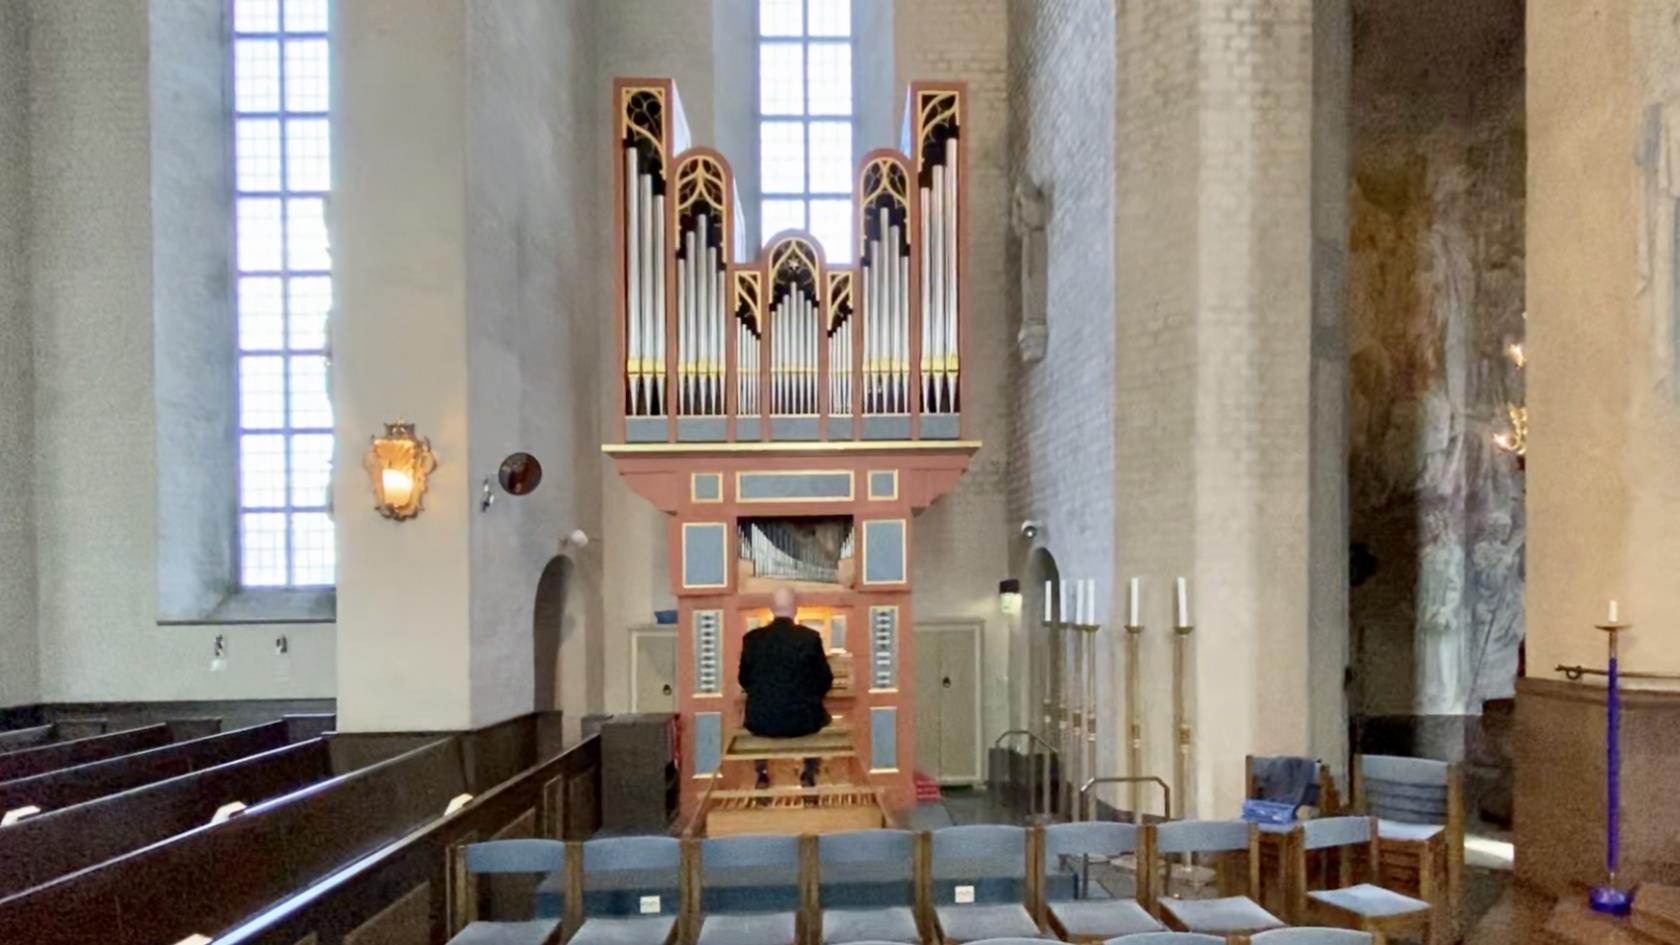 En orgel och en person som sitter vid den. kyrkbänkar, ljus, höga fönster. 